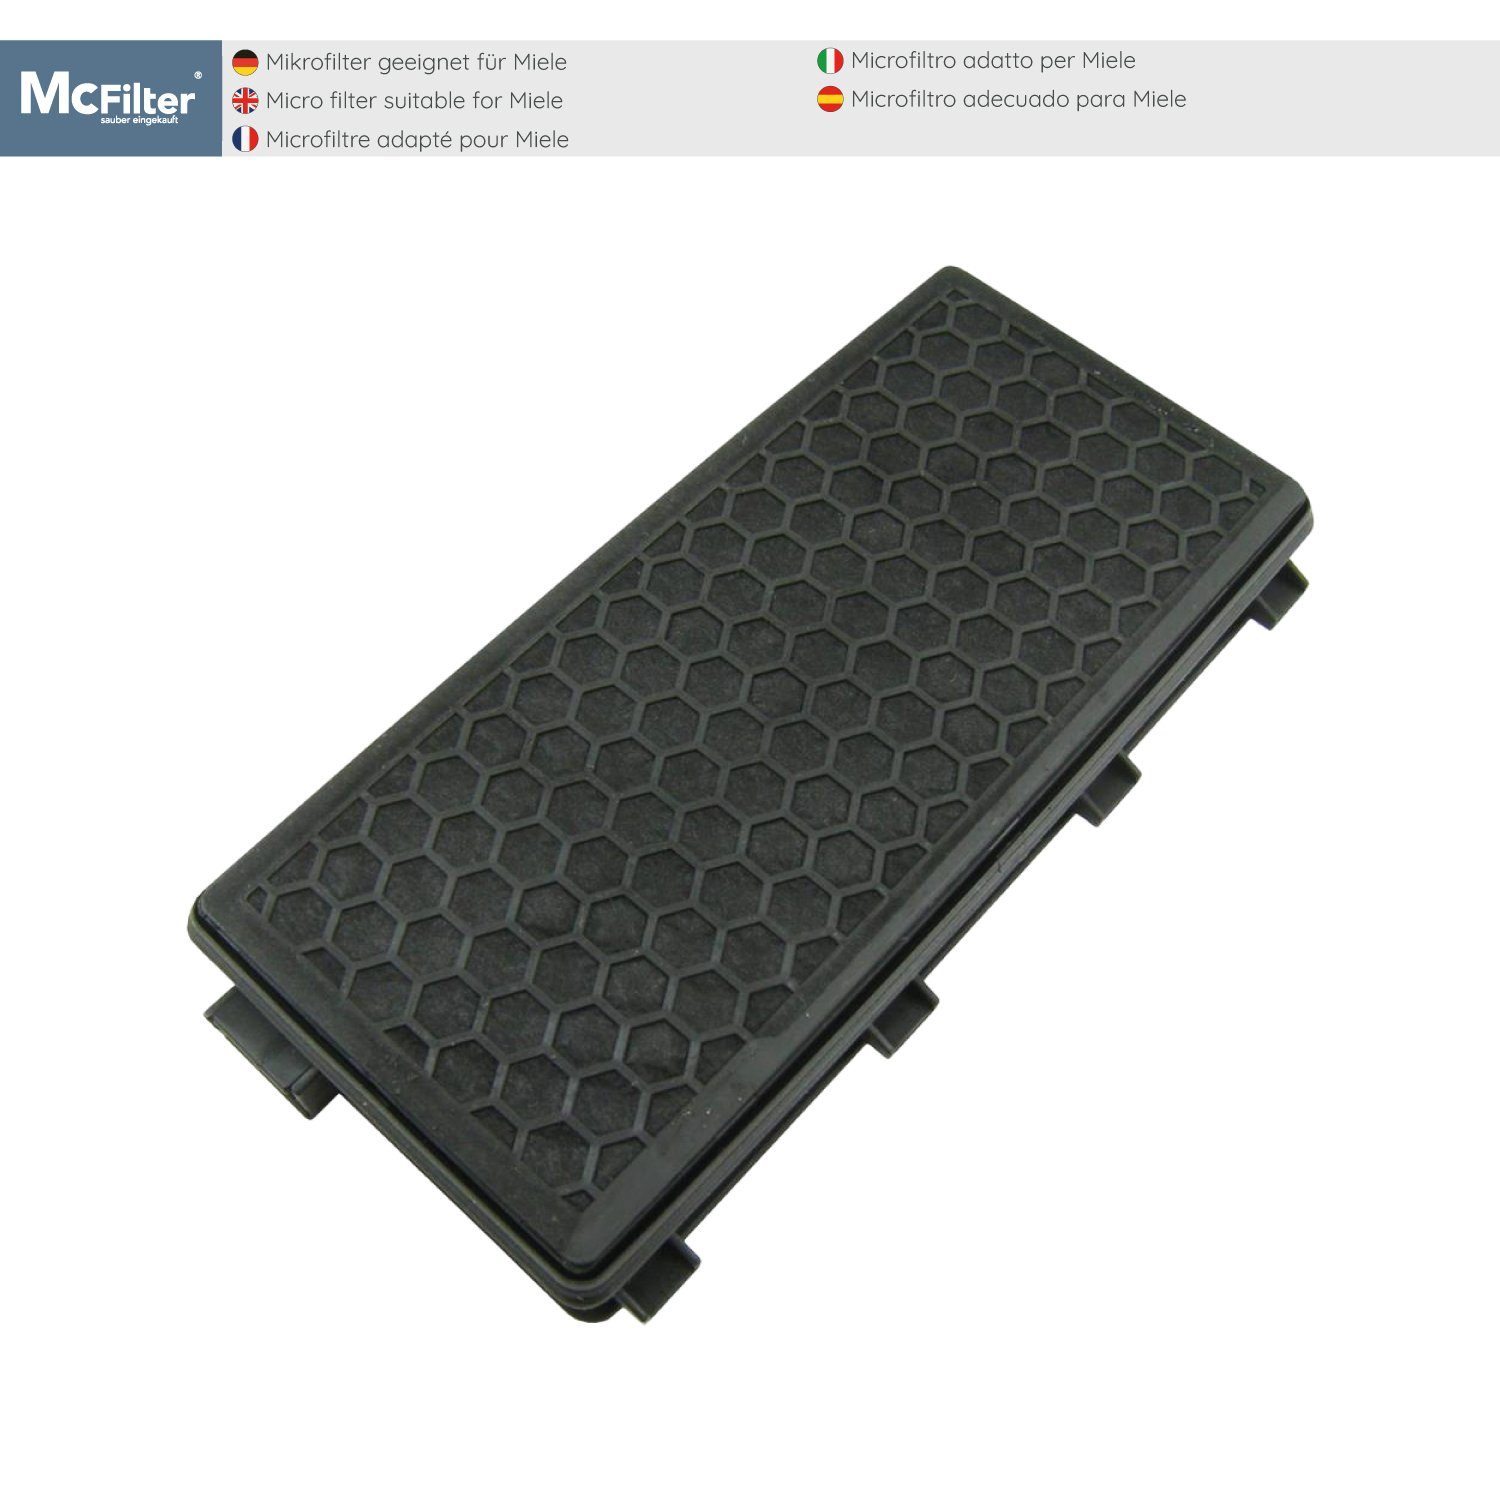 2 passgenau, 2 PowerLine Miele schwarz, S8340 zu Filter für 50 EcoLine HEPA-Filter Alternative geeignet Stück, S8360, McFilter S8, SF-AH